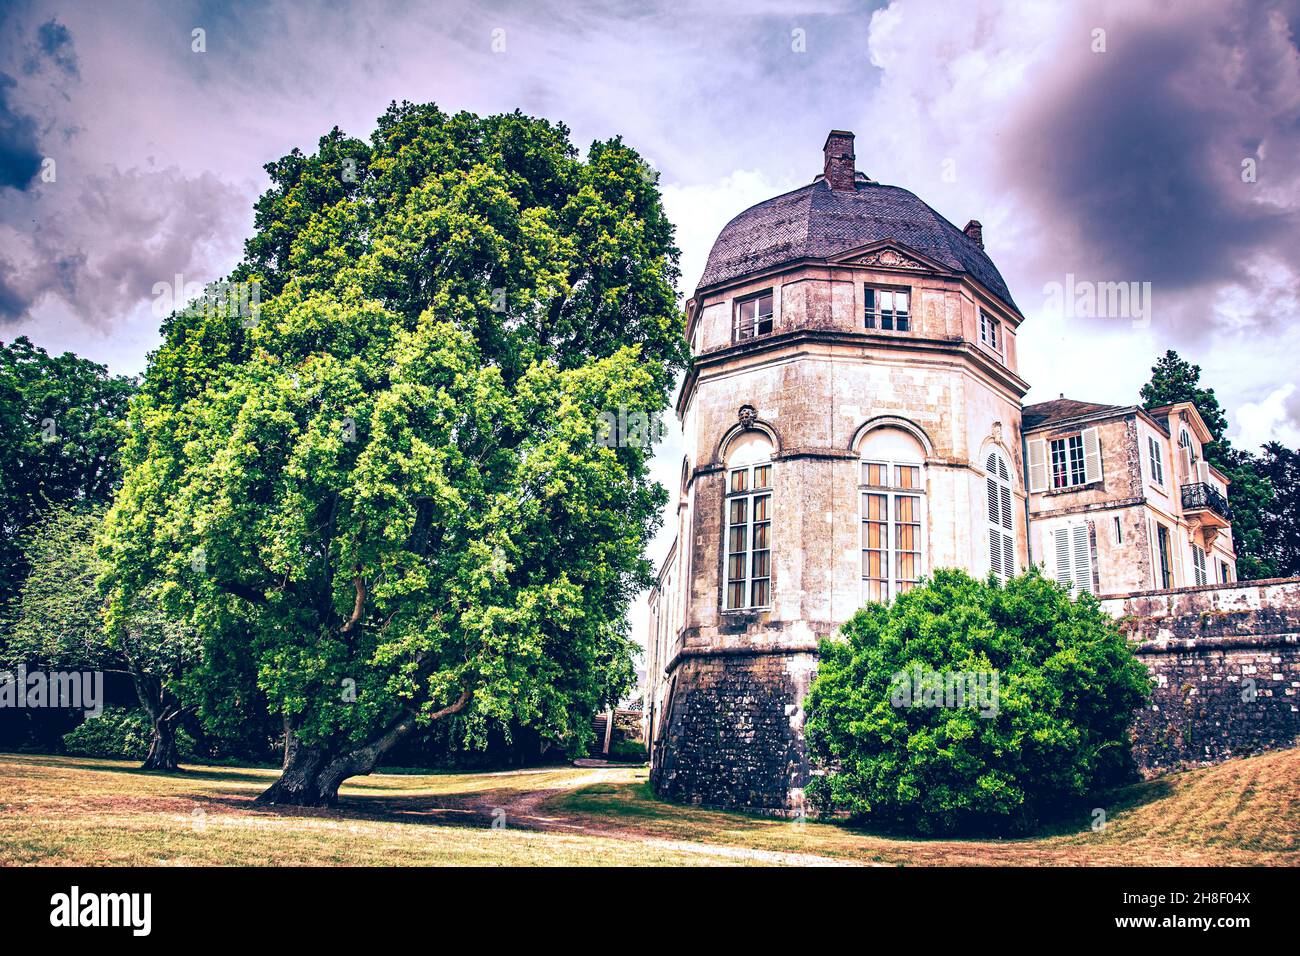 The historic Castle of Châteauneuf-sur-Loire, Département Loiret, France, 06-21-2015 Stock Photo